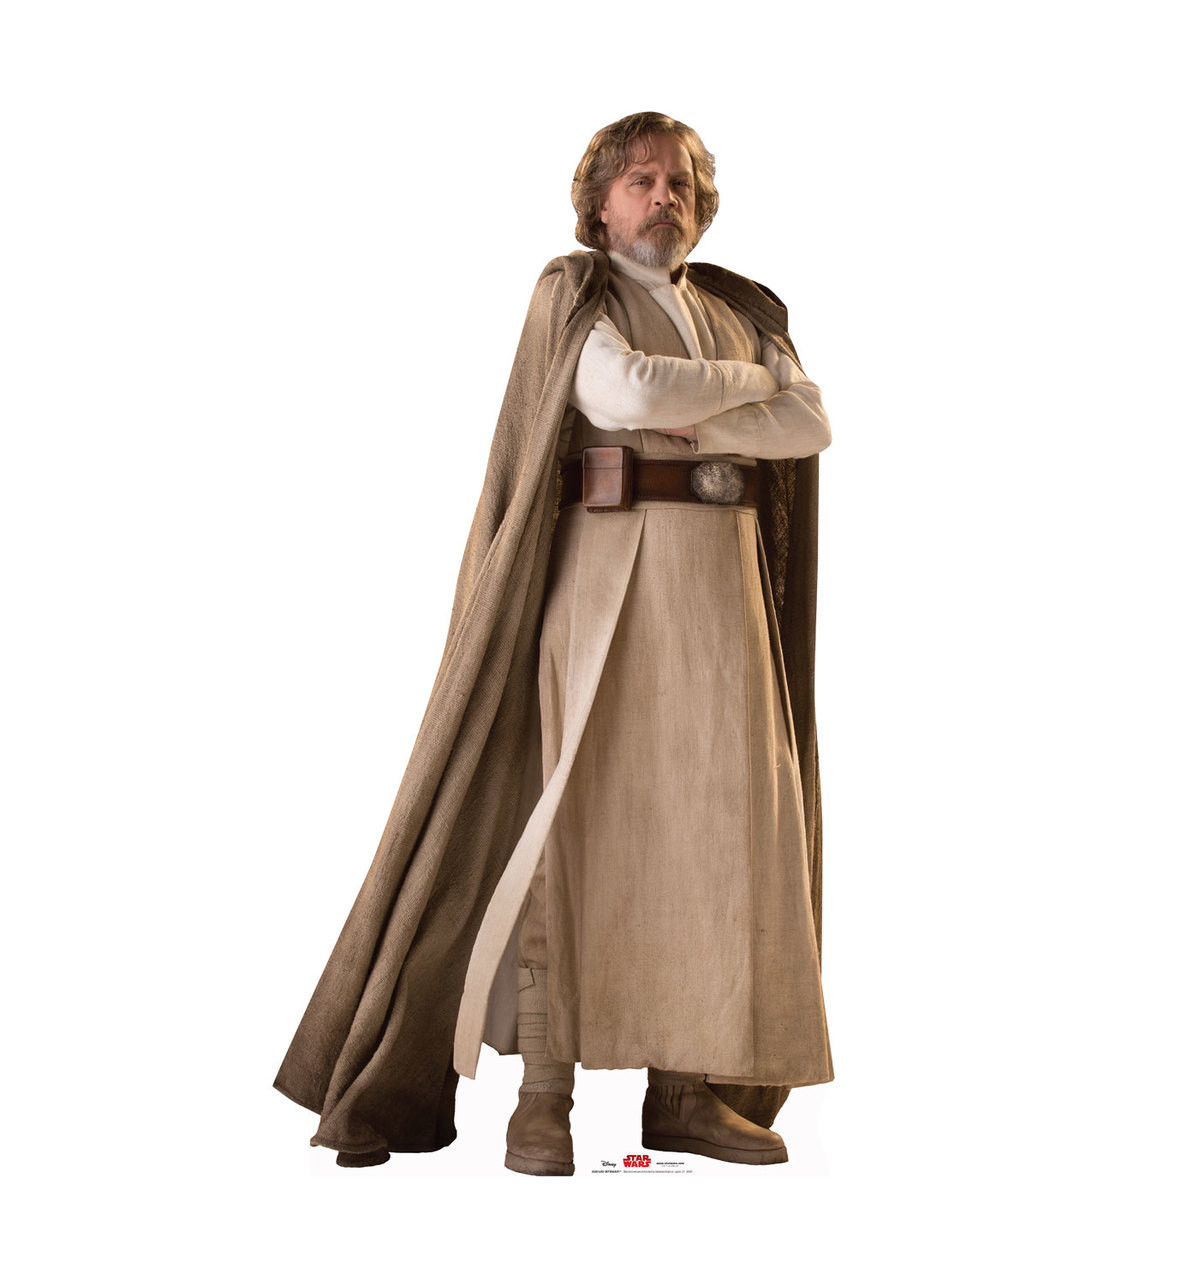 Luke Skywalker - Star Wars: The Last Jedi Life-Size Cardboard Cutout 1